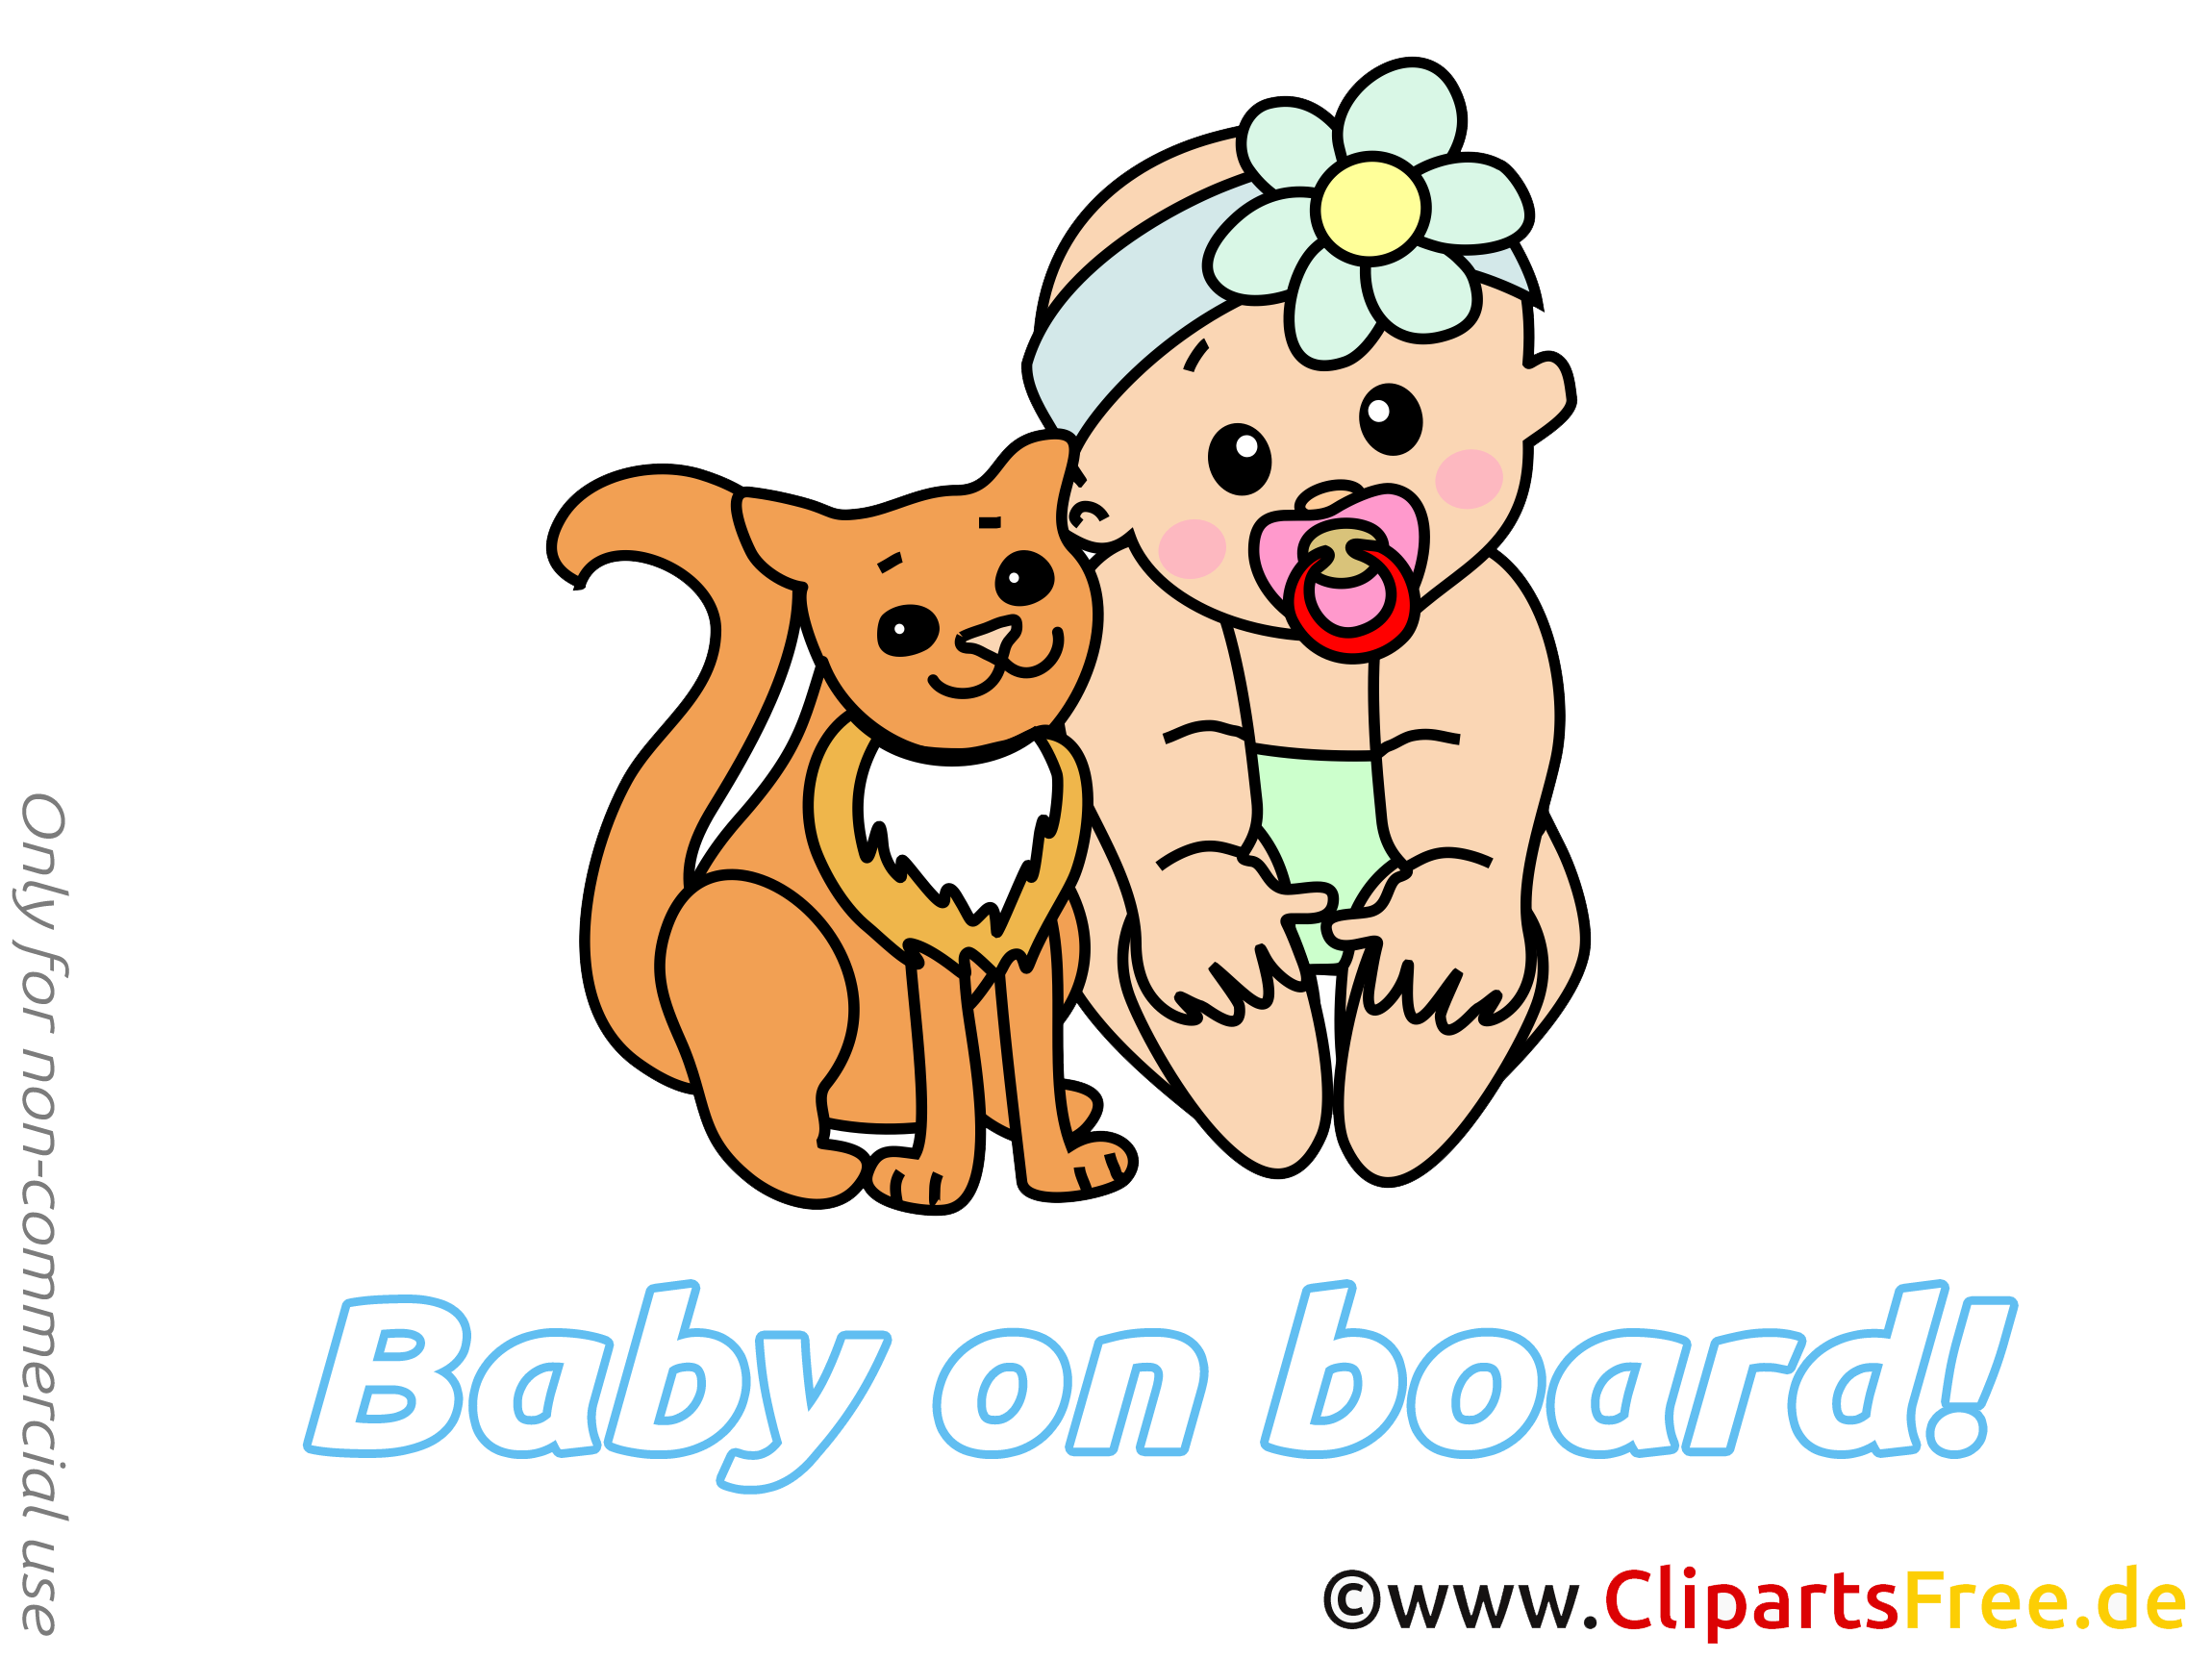 Chat image – Bébé à bord images cliparts